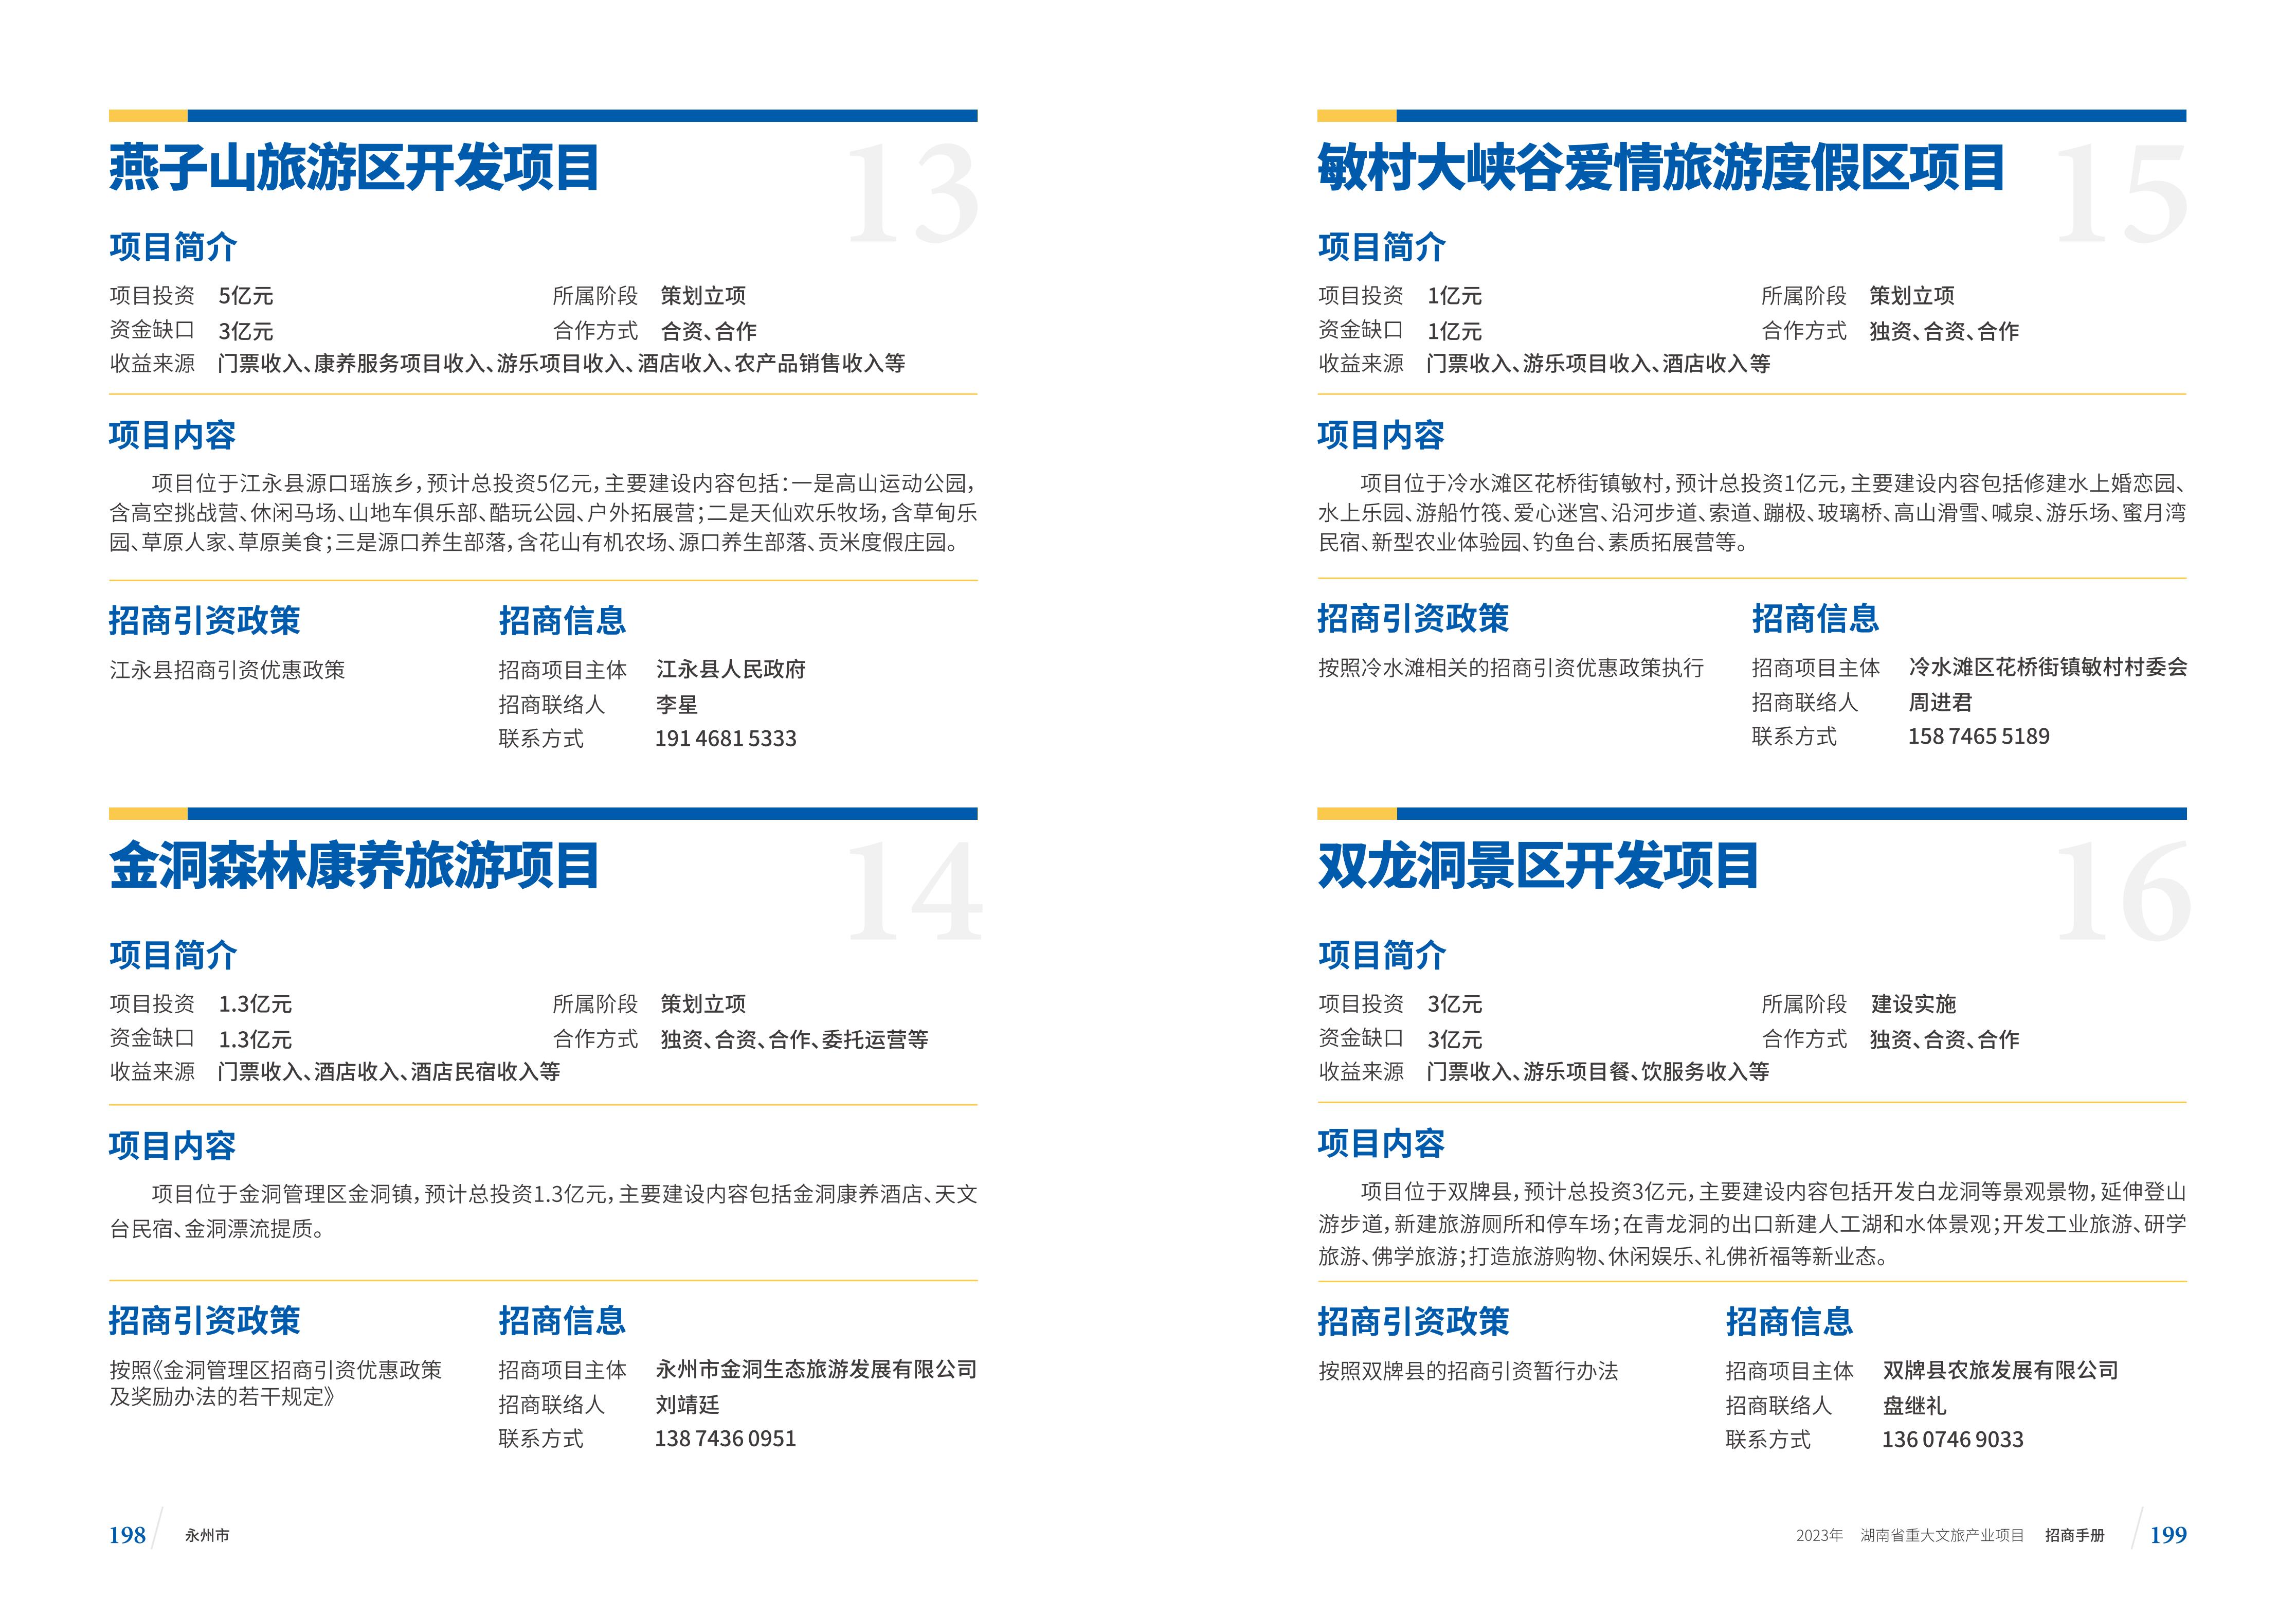 湖南省重大文旅产业项目招手册线上链接版_107.jpg